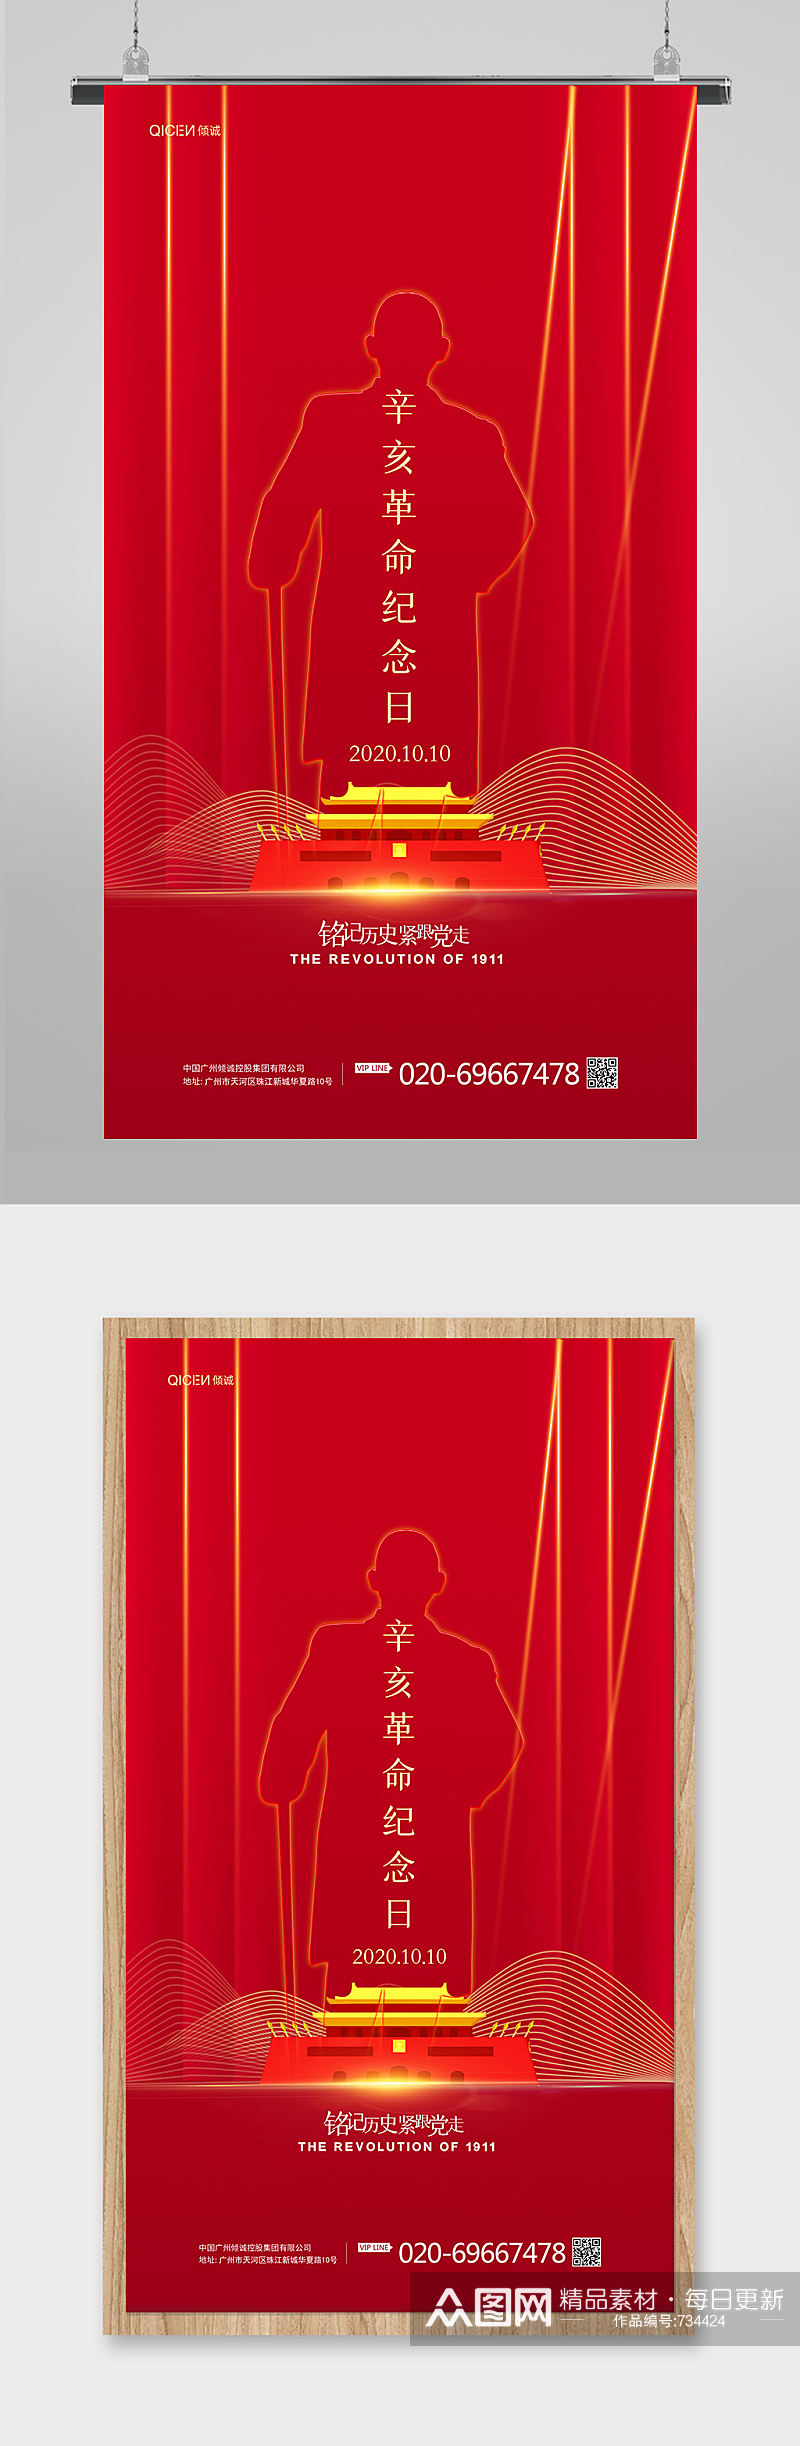 简约红色辛亥革命纪念日宣传海报设计素材